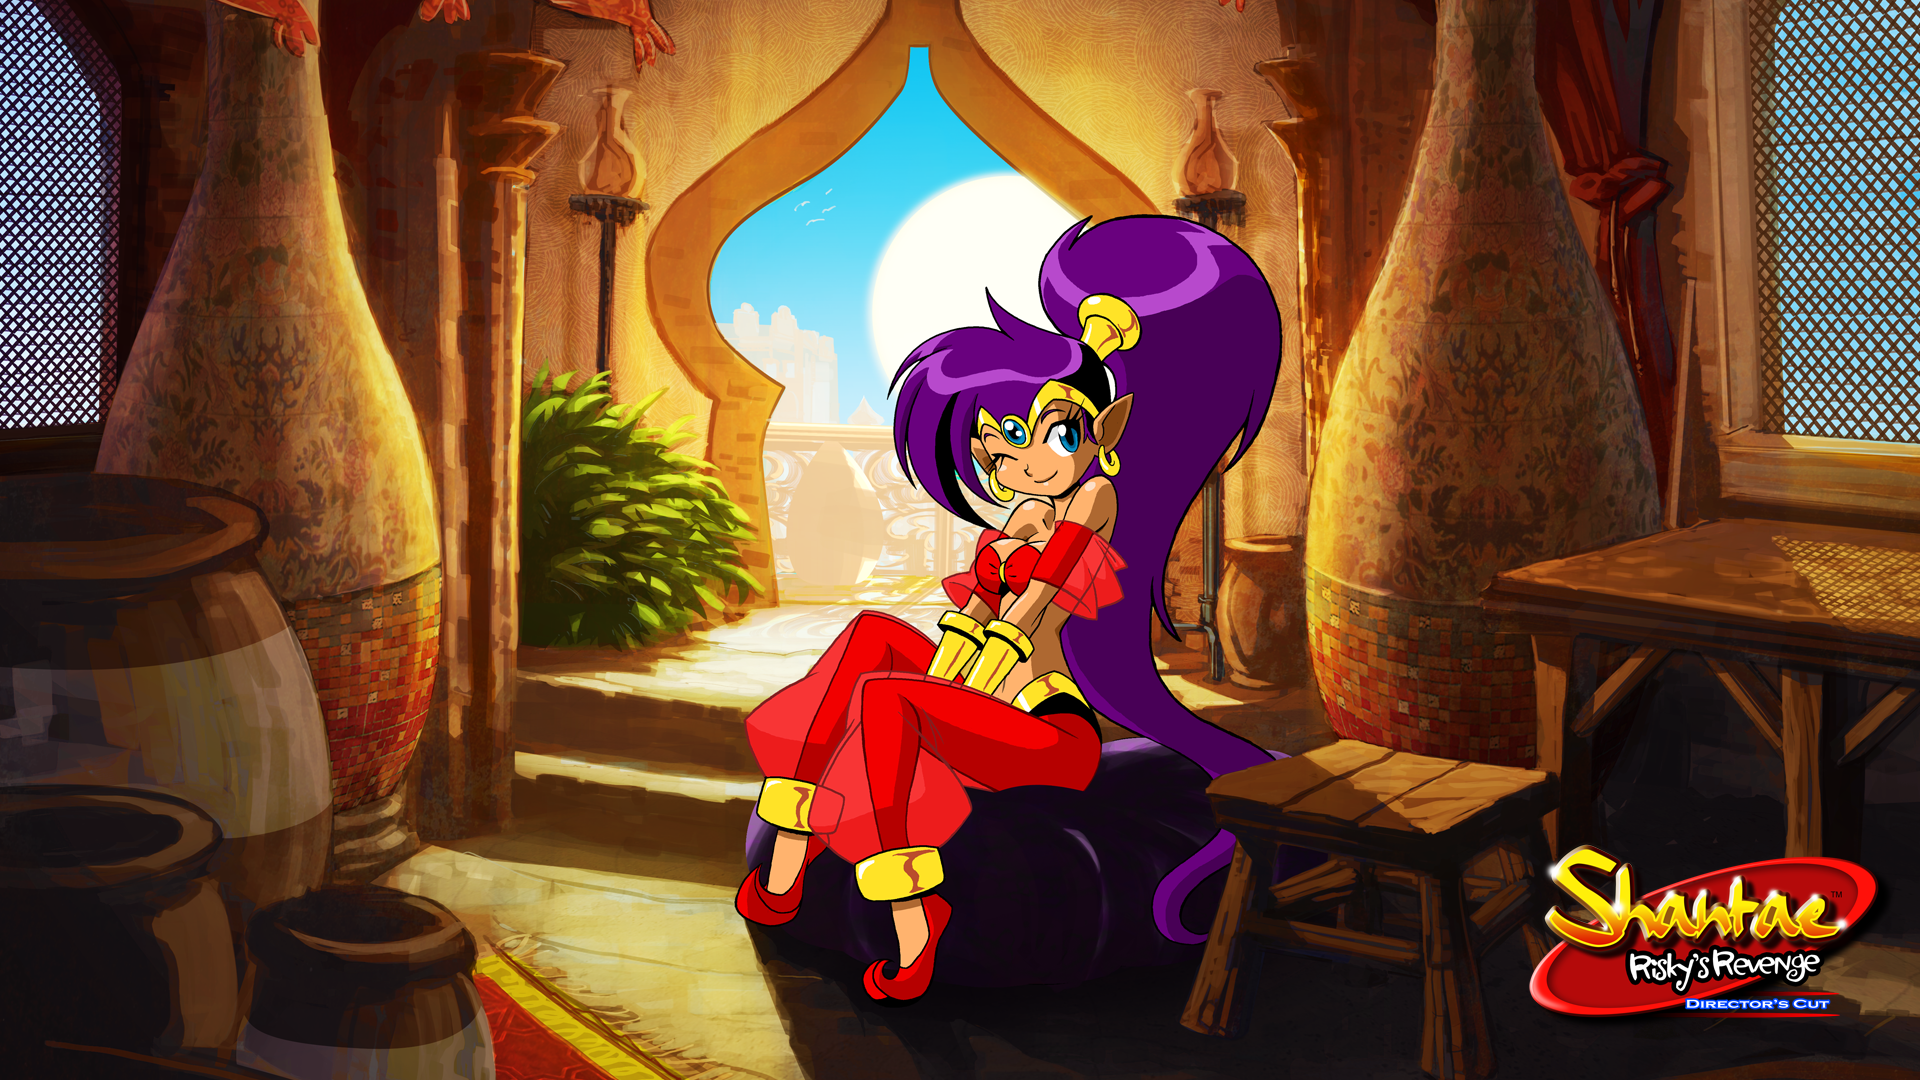 Switch-версия Shantae подоспеет 22 апреля. Релизный трейлер - внутри